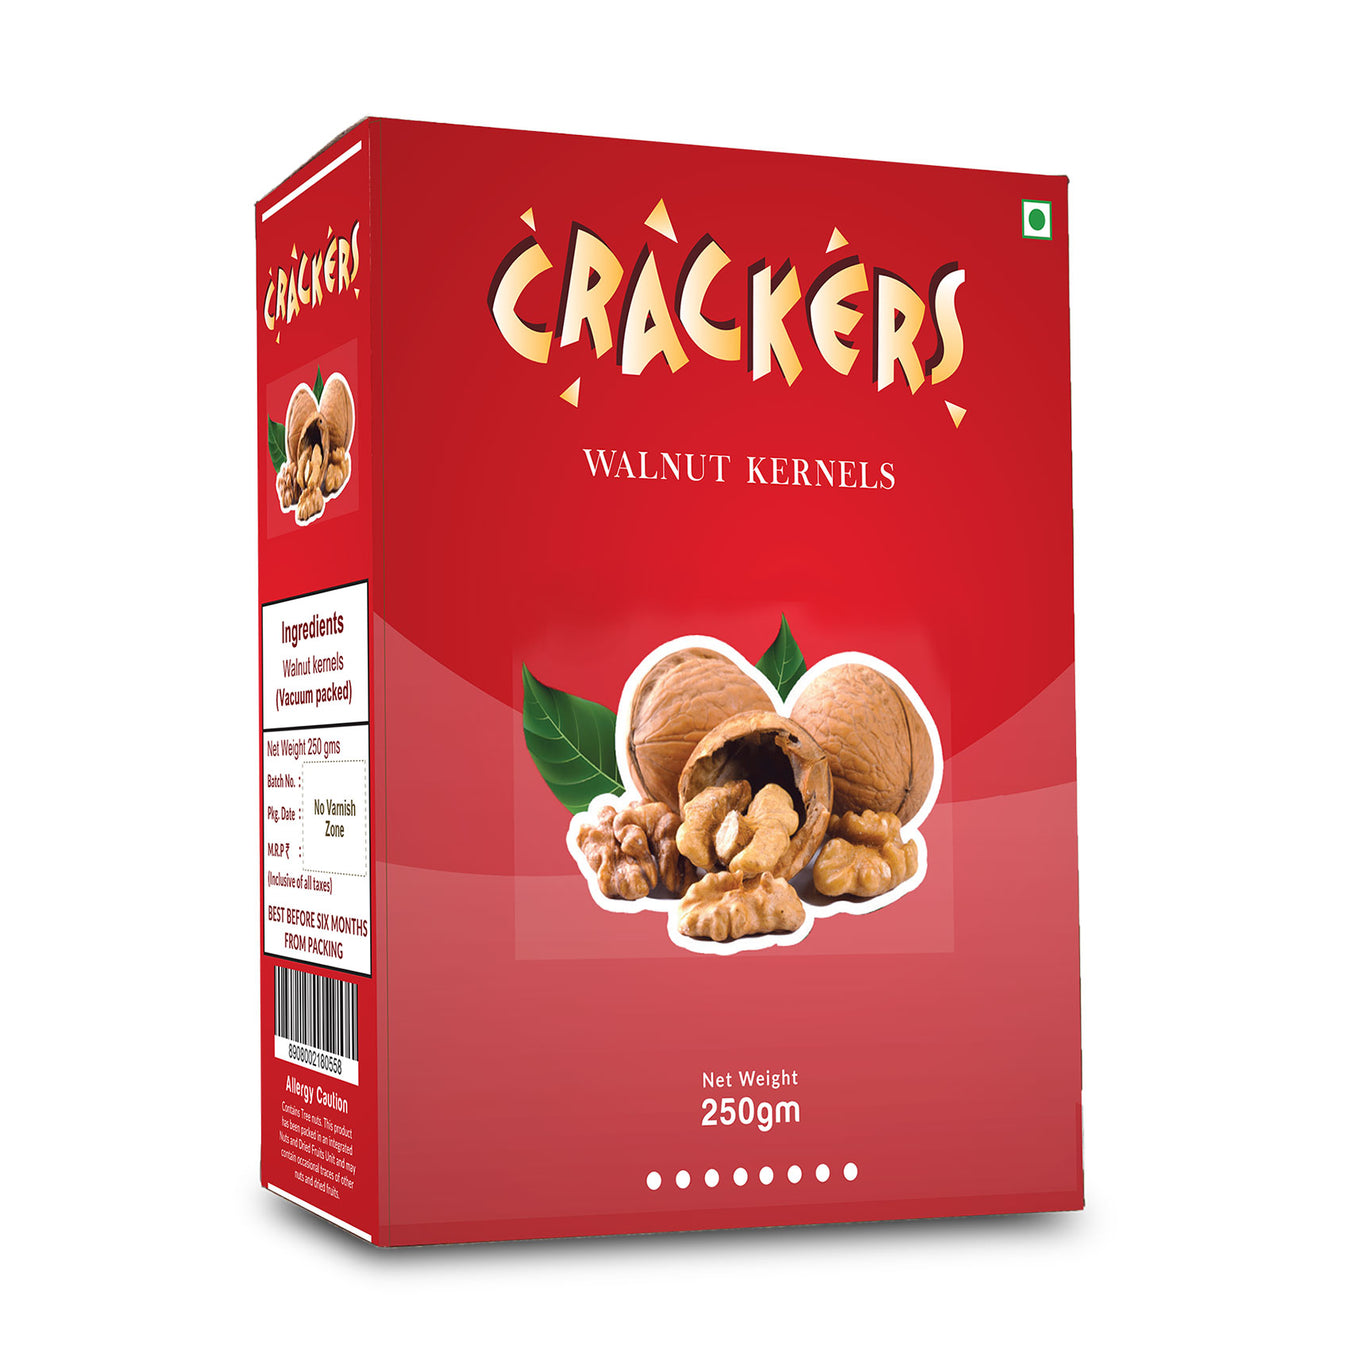 Cracker’s